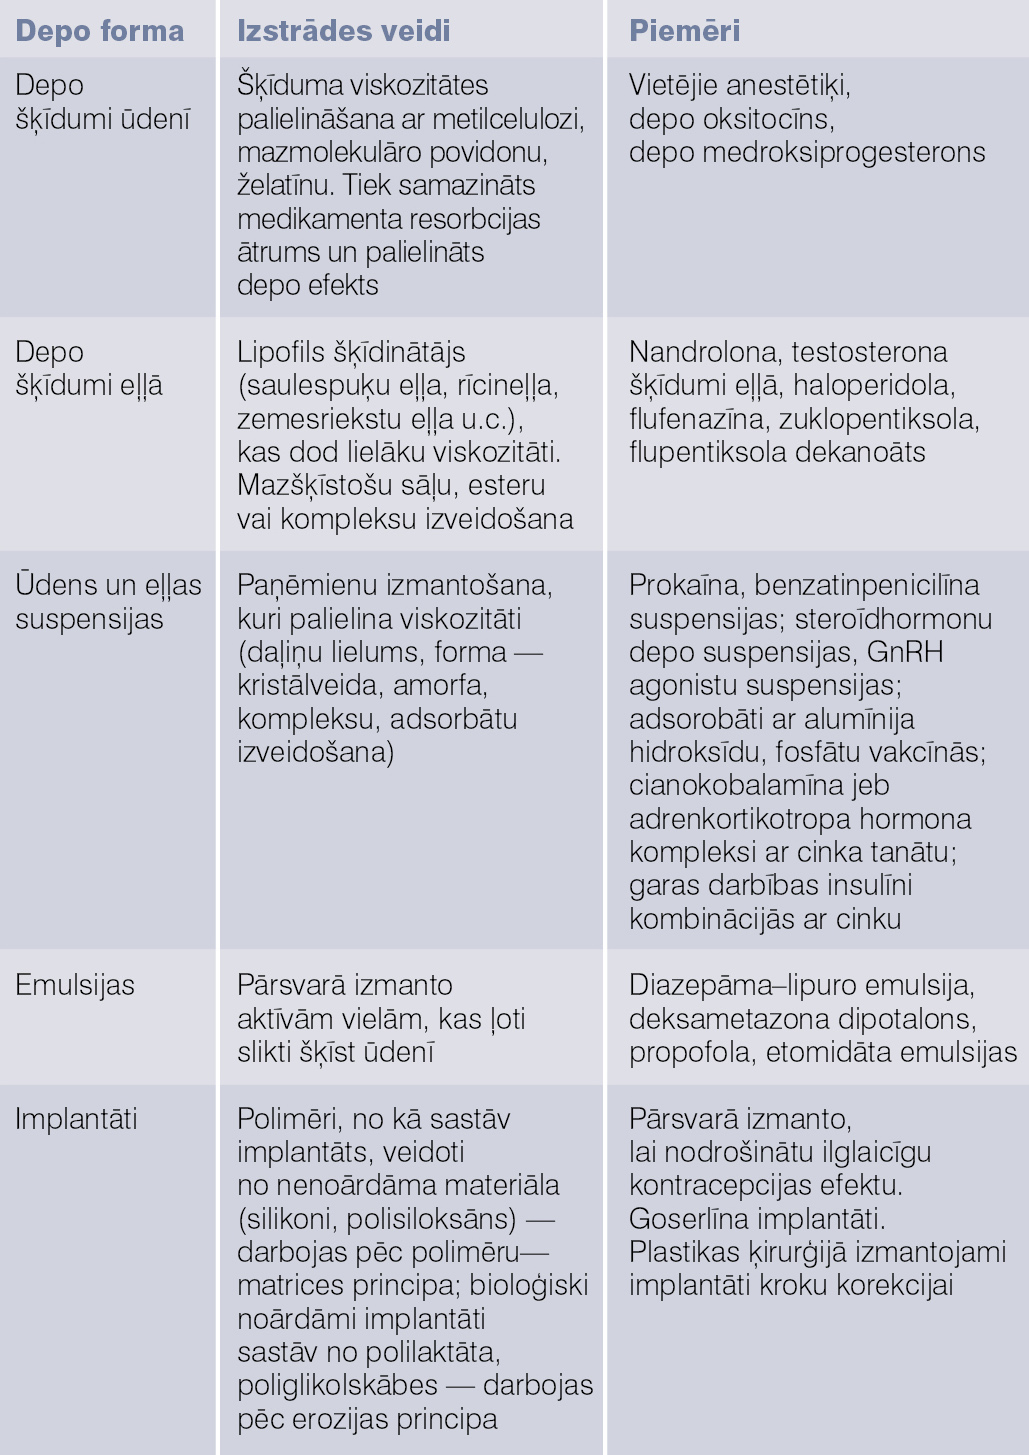 Parenterālās depo zāļu formas un piemēri [2; 3]